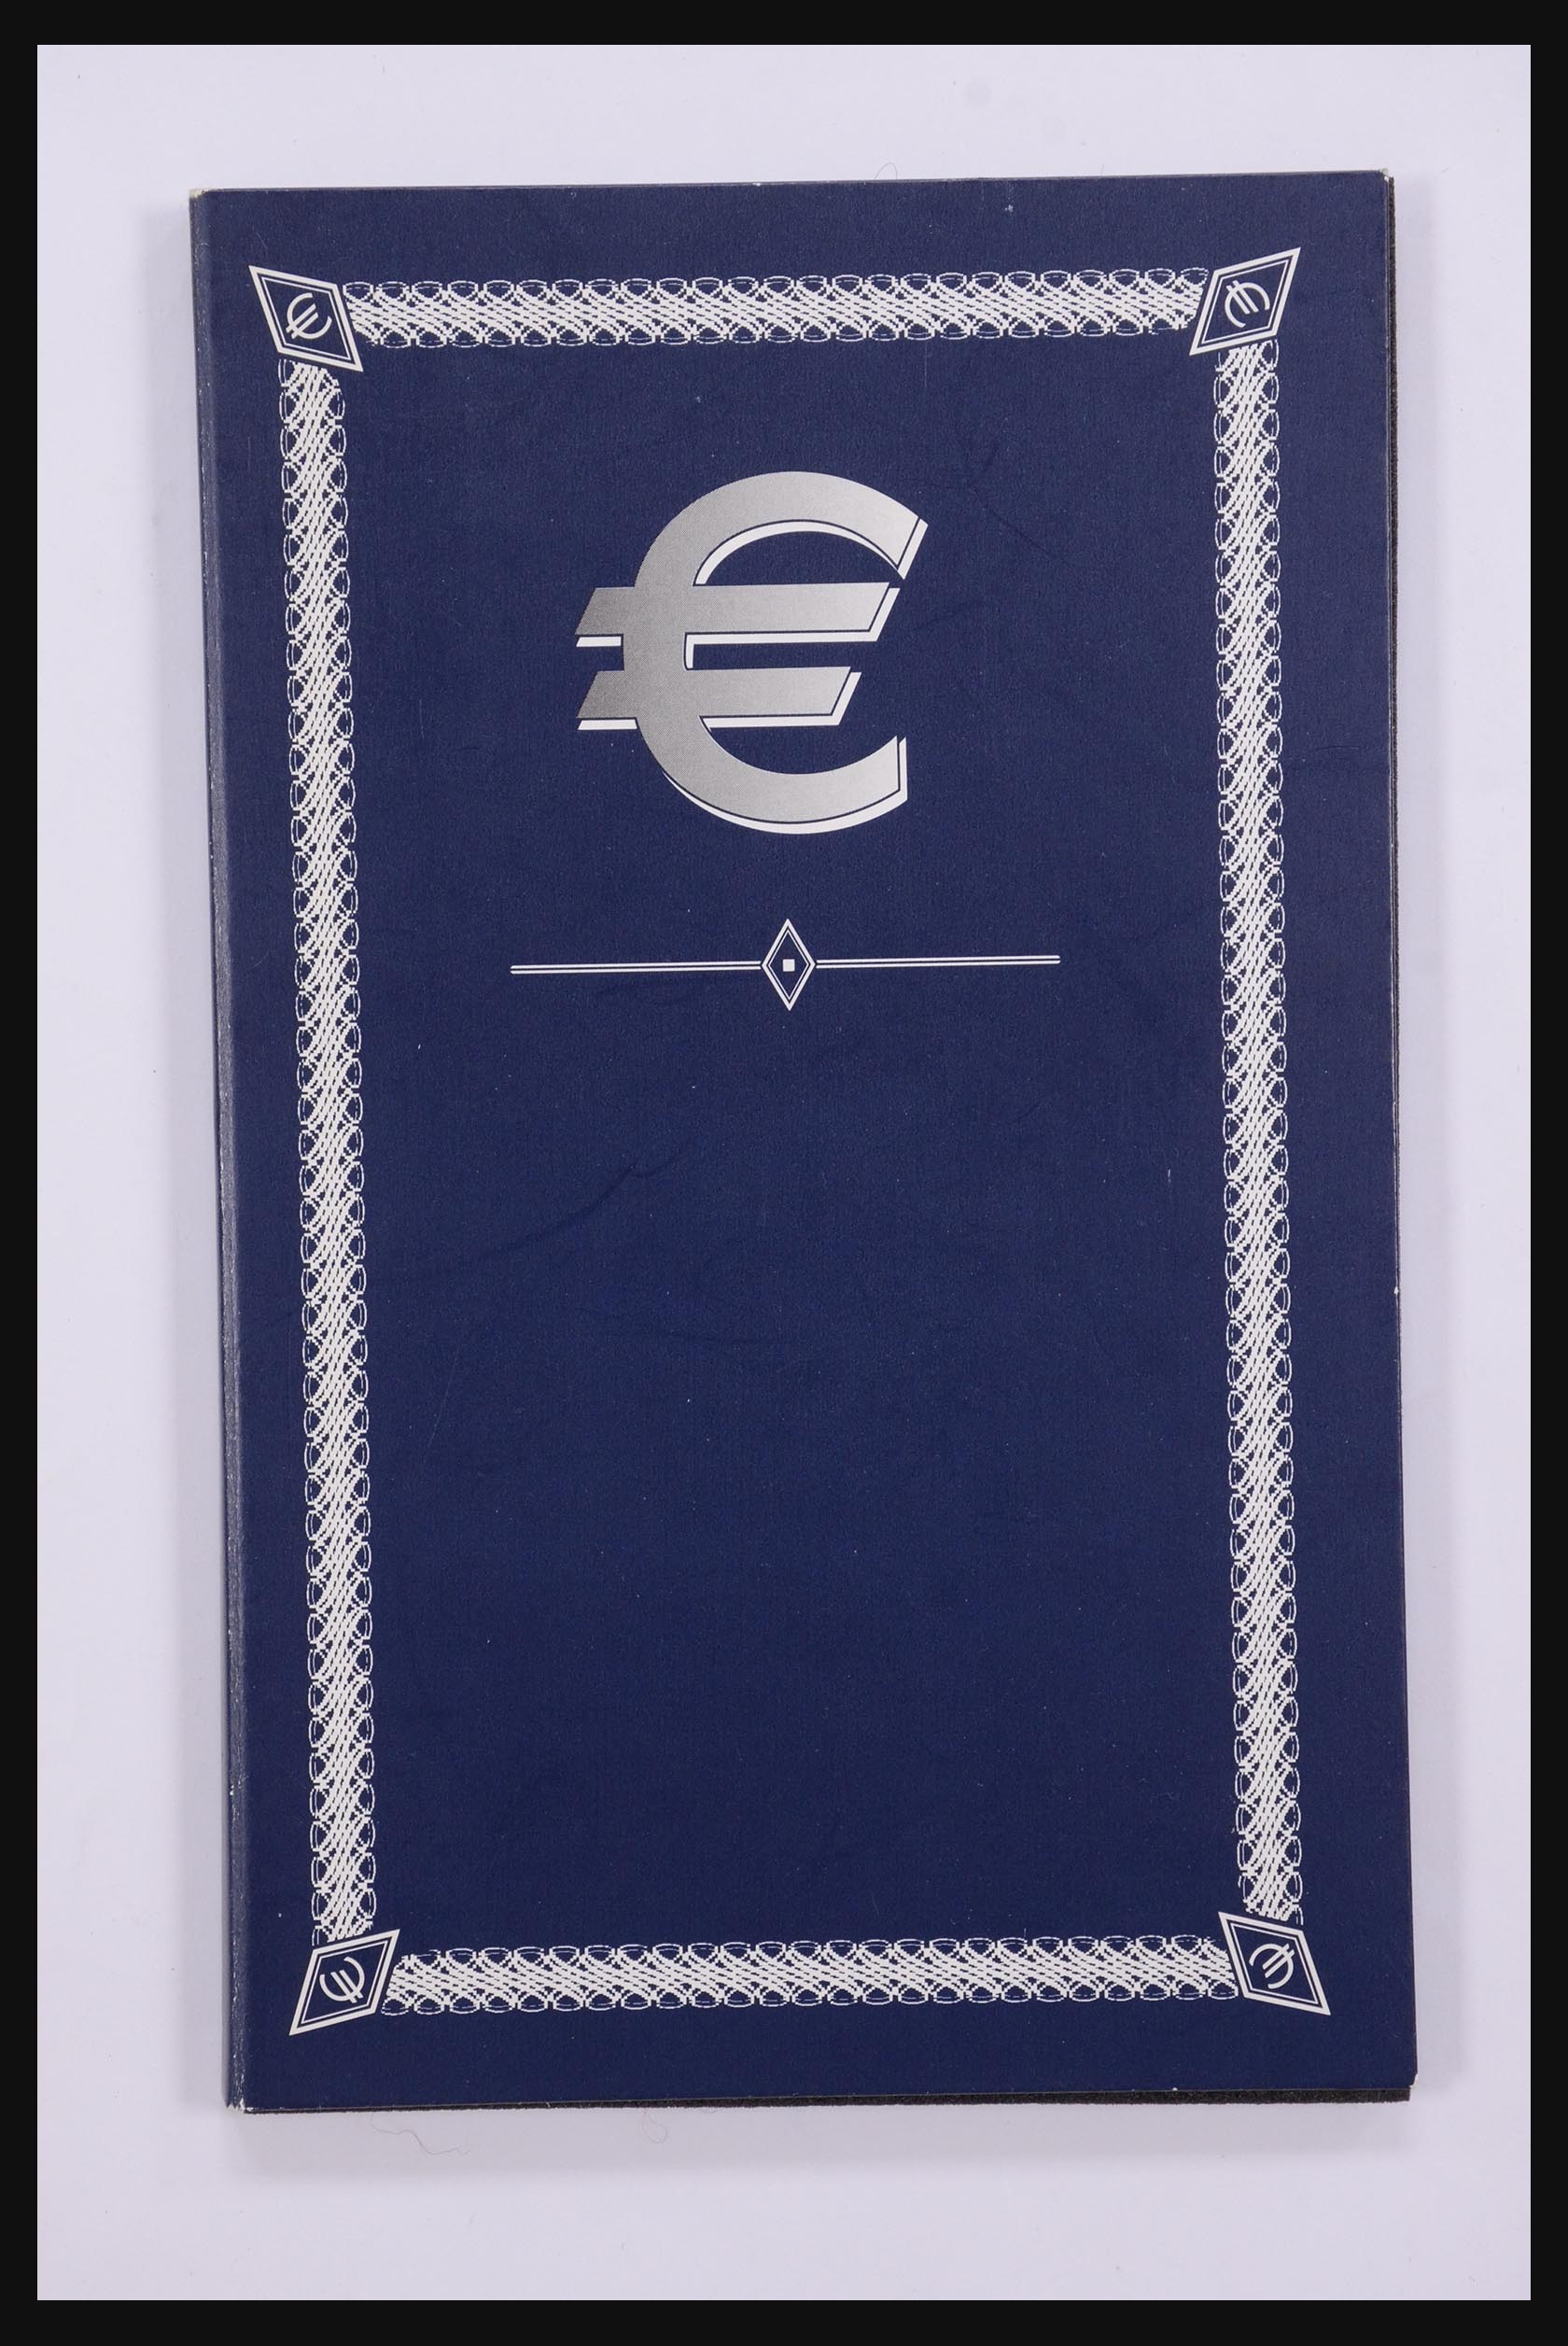 32149 030 - 32149 Europese landen euromunten 2003.